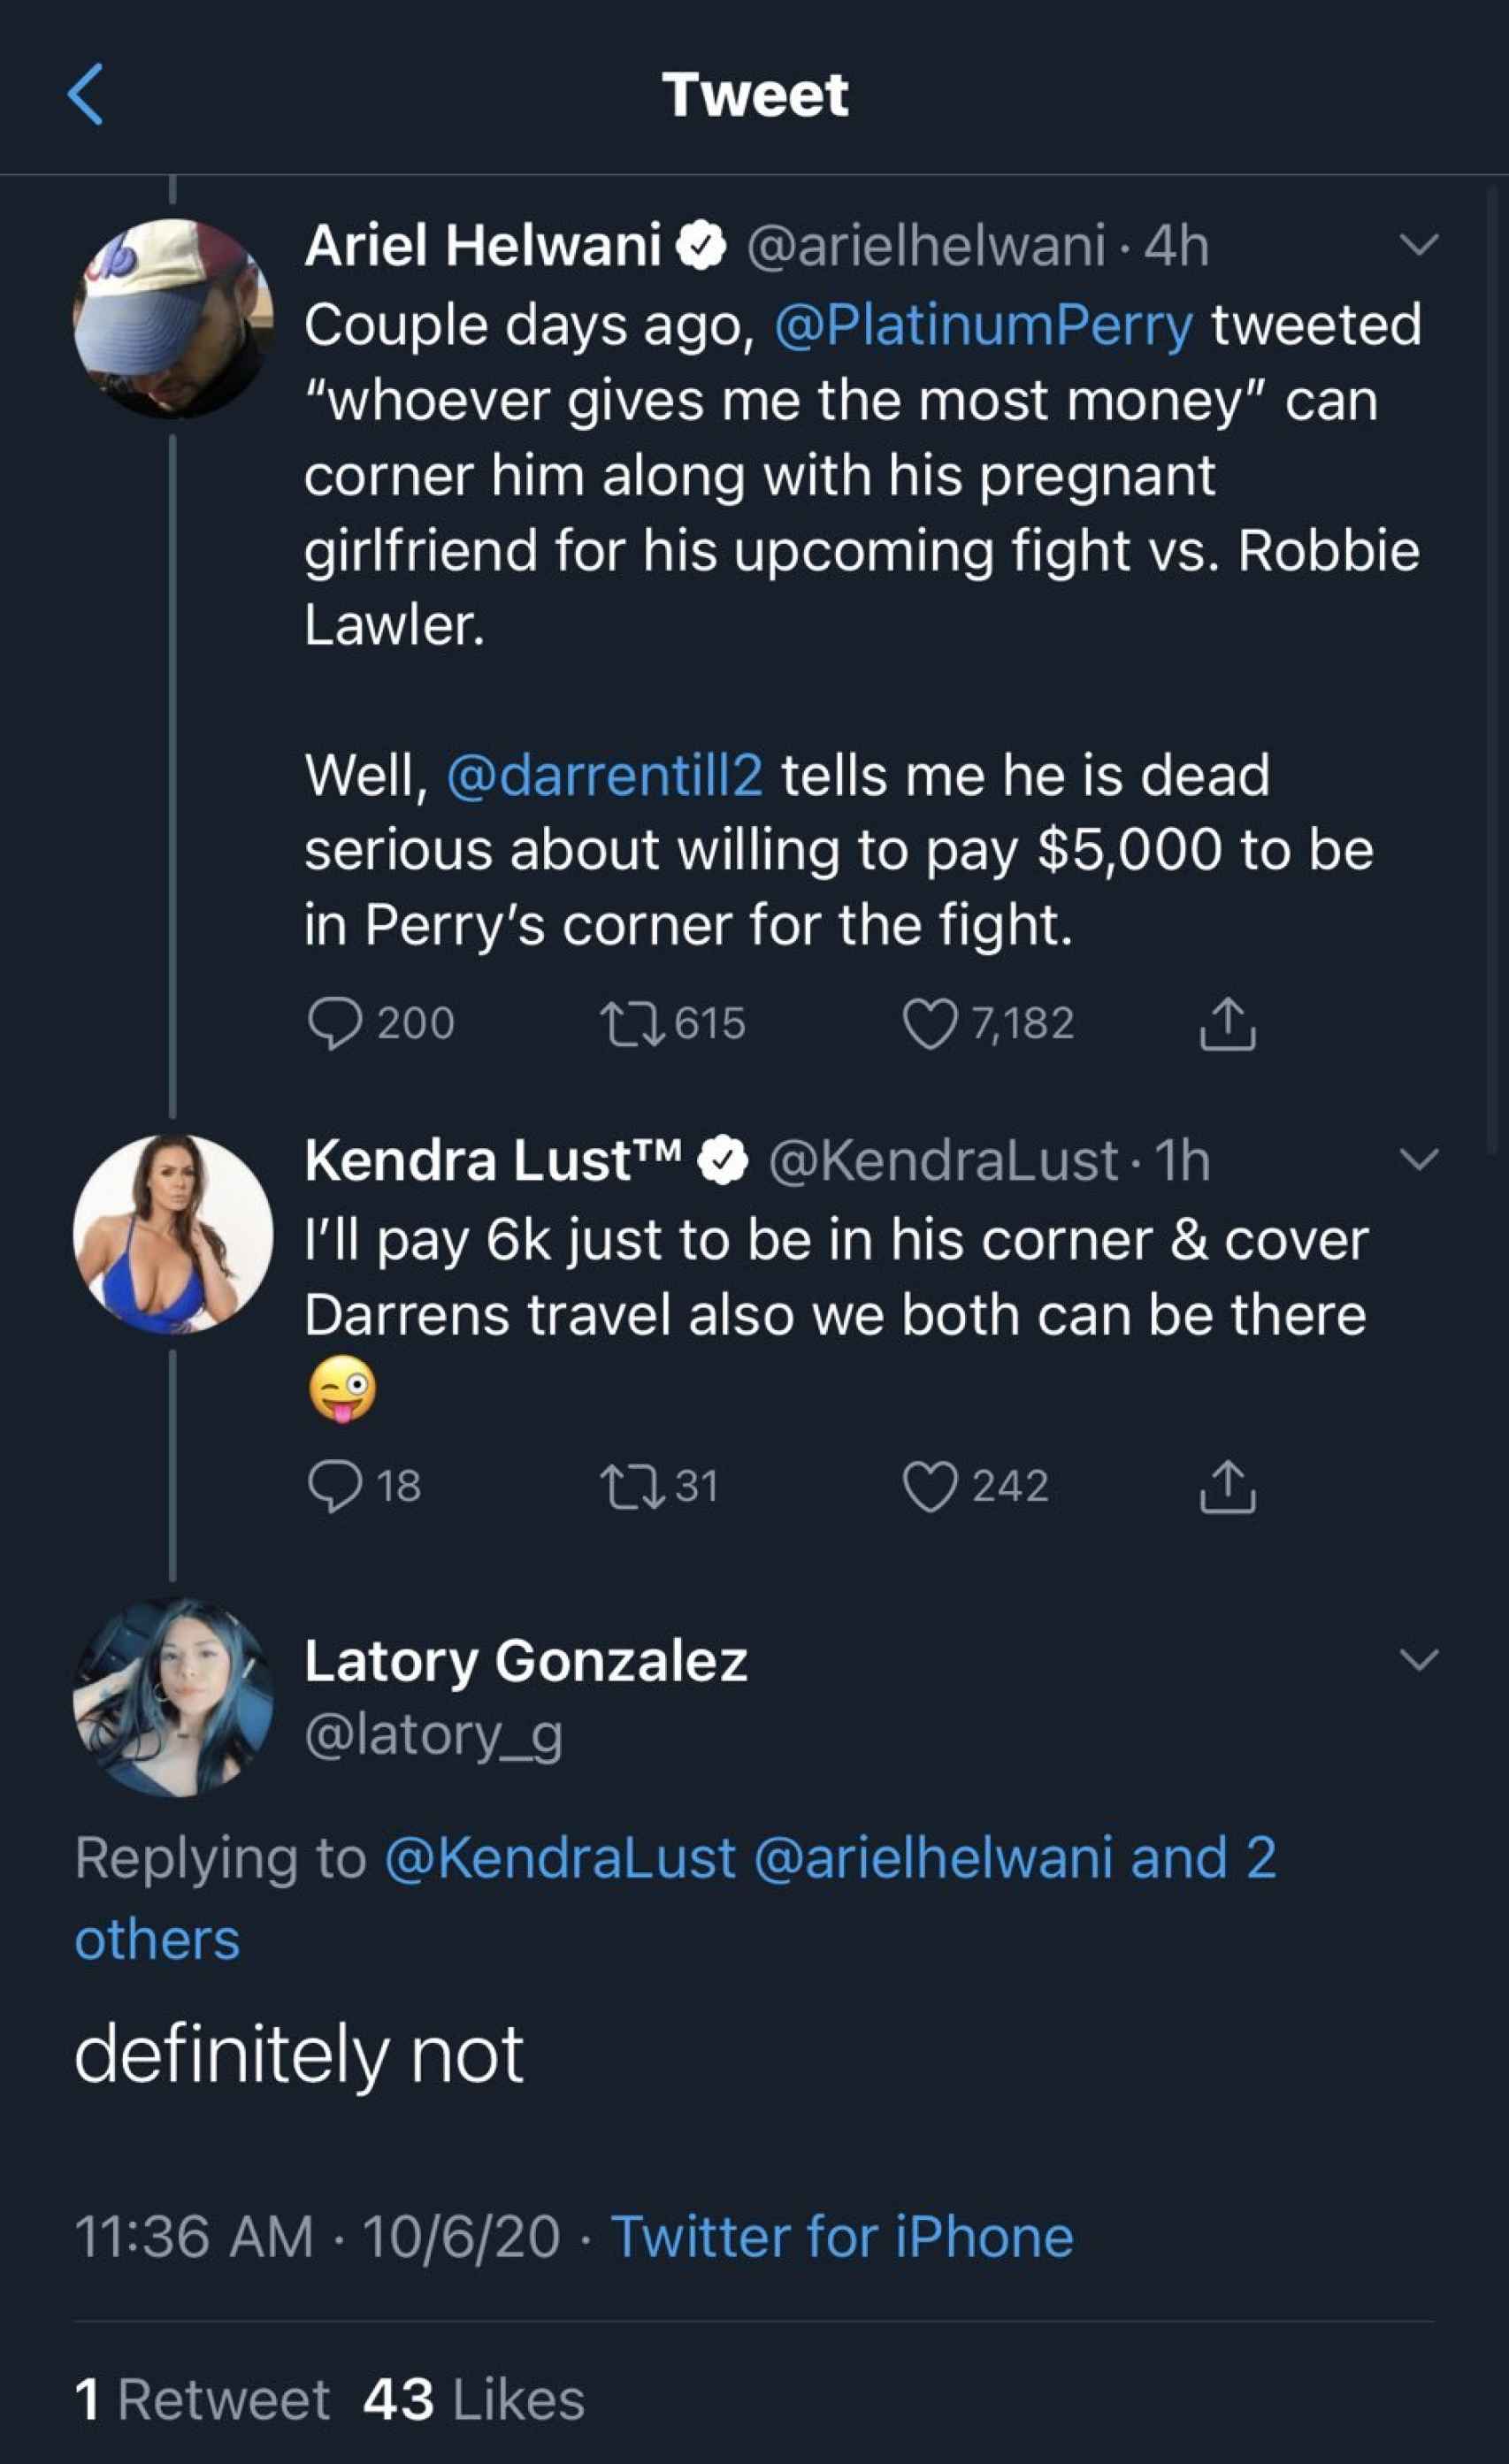 La conversación entre Kendra Lust y Latory González